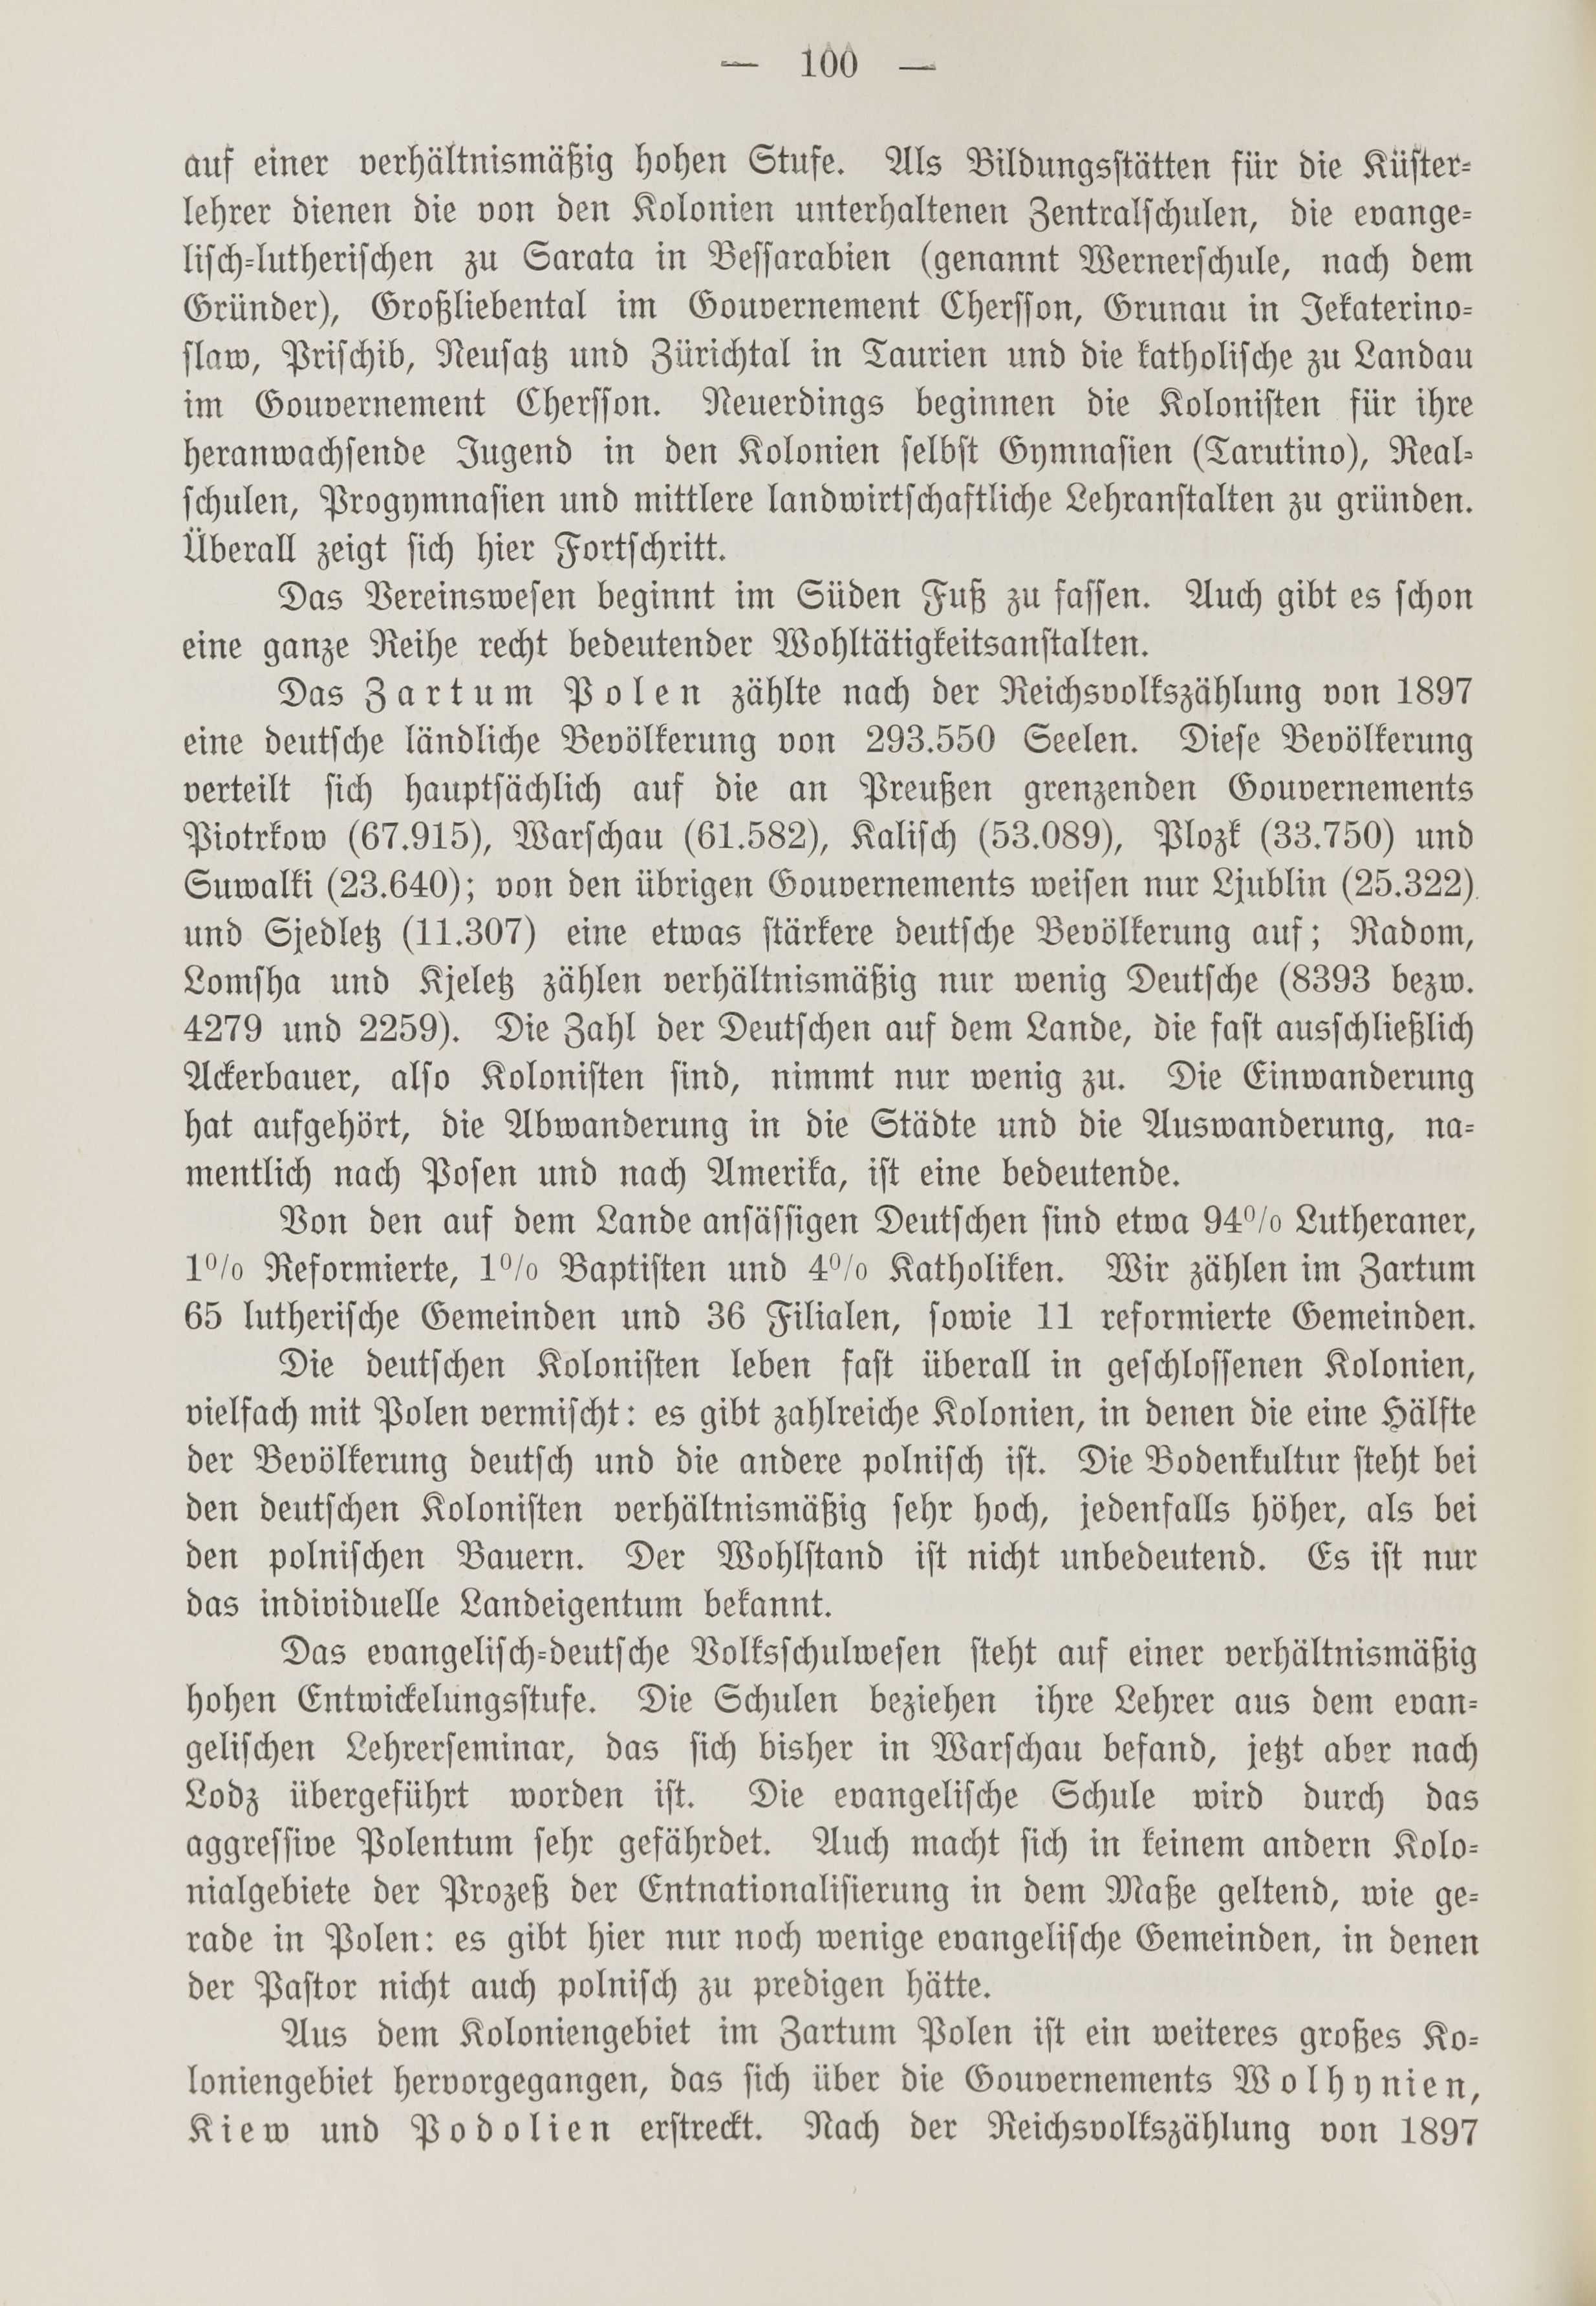 Deutsche Monatsschrift für Russland [1] (1912) | 108. (100) Main body of text